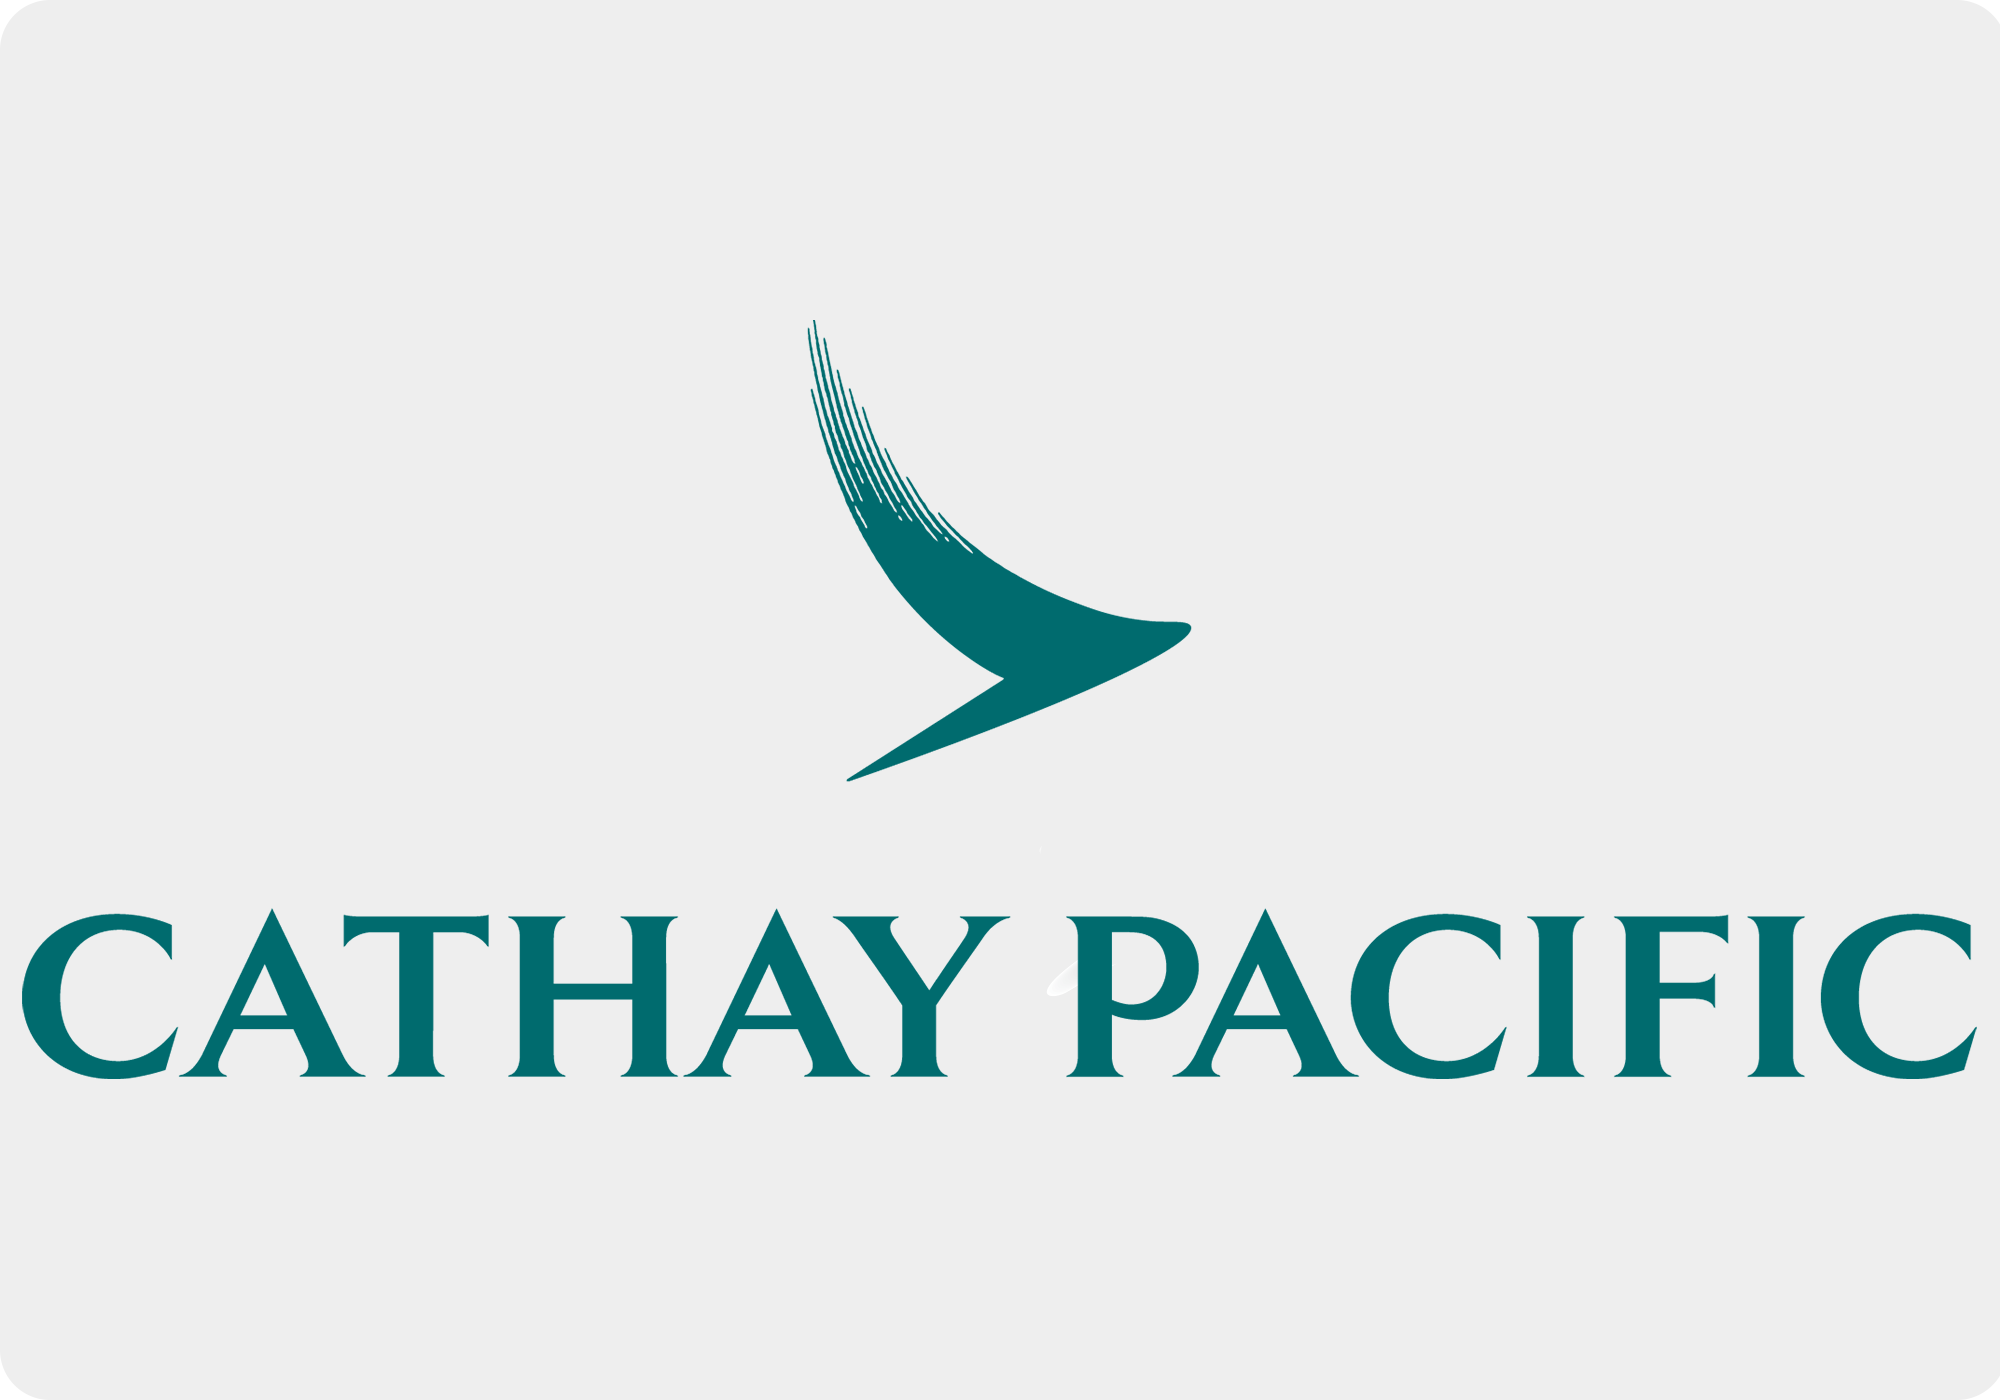 BARIN - Cathay Pacific logo